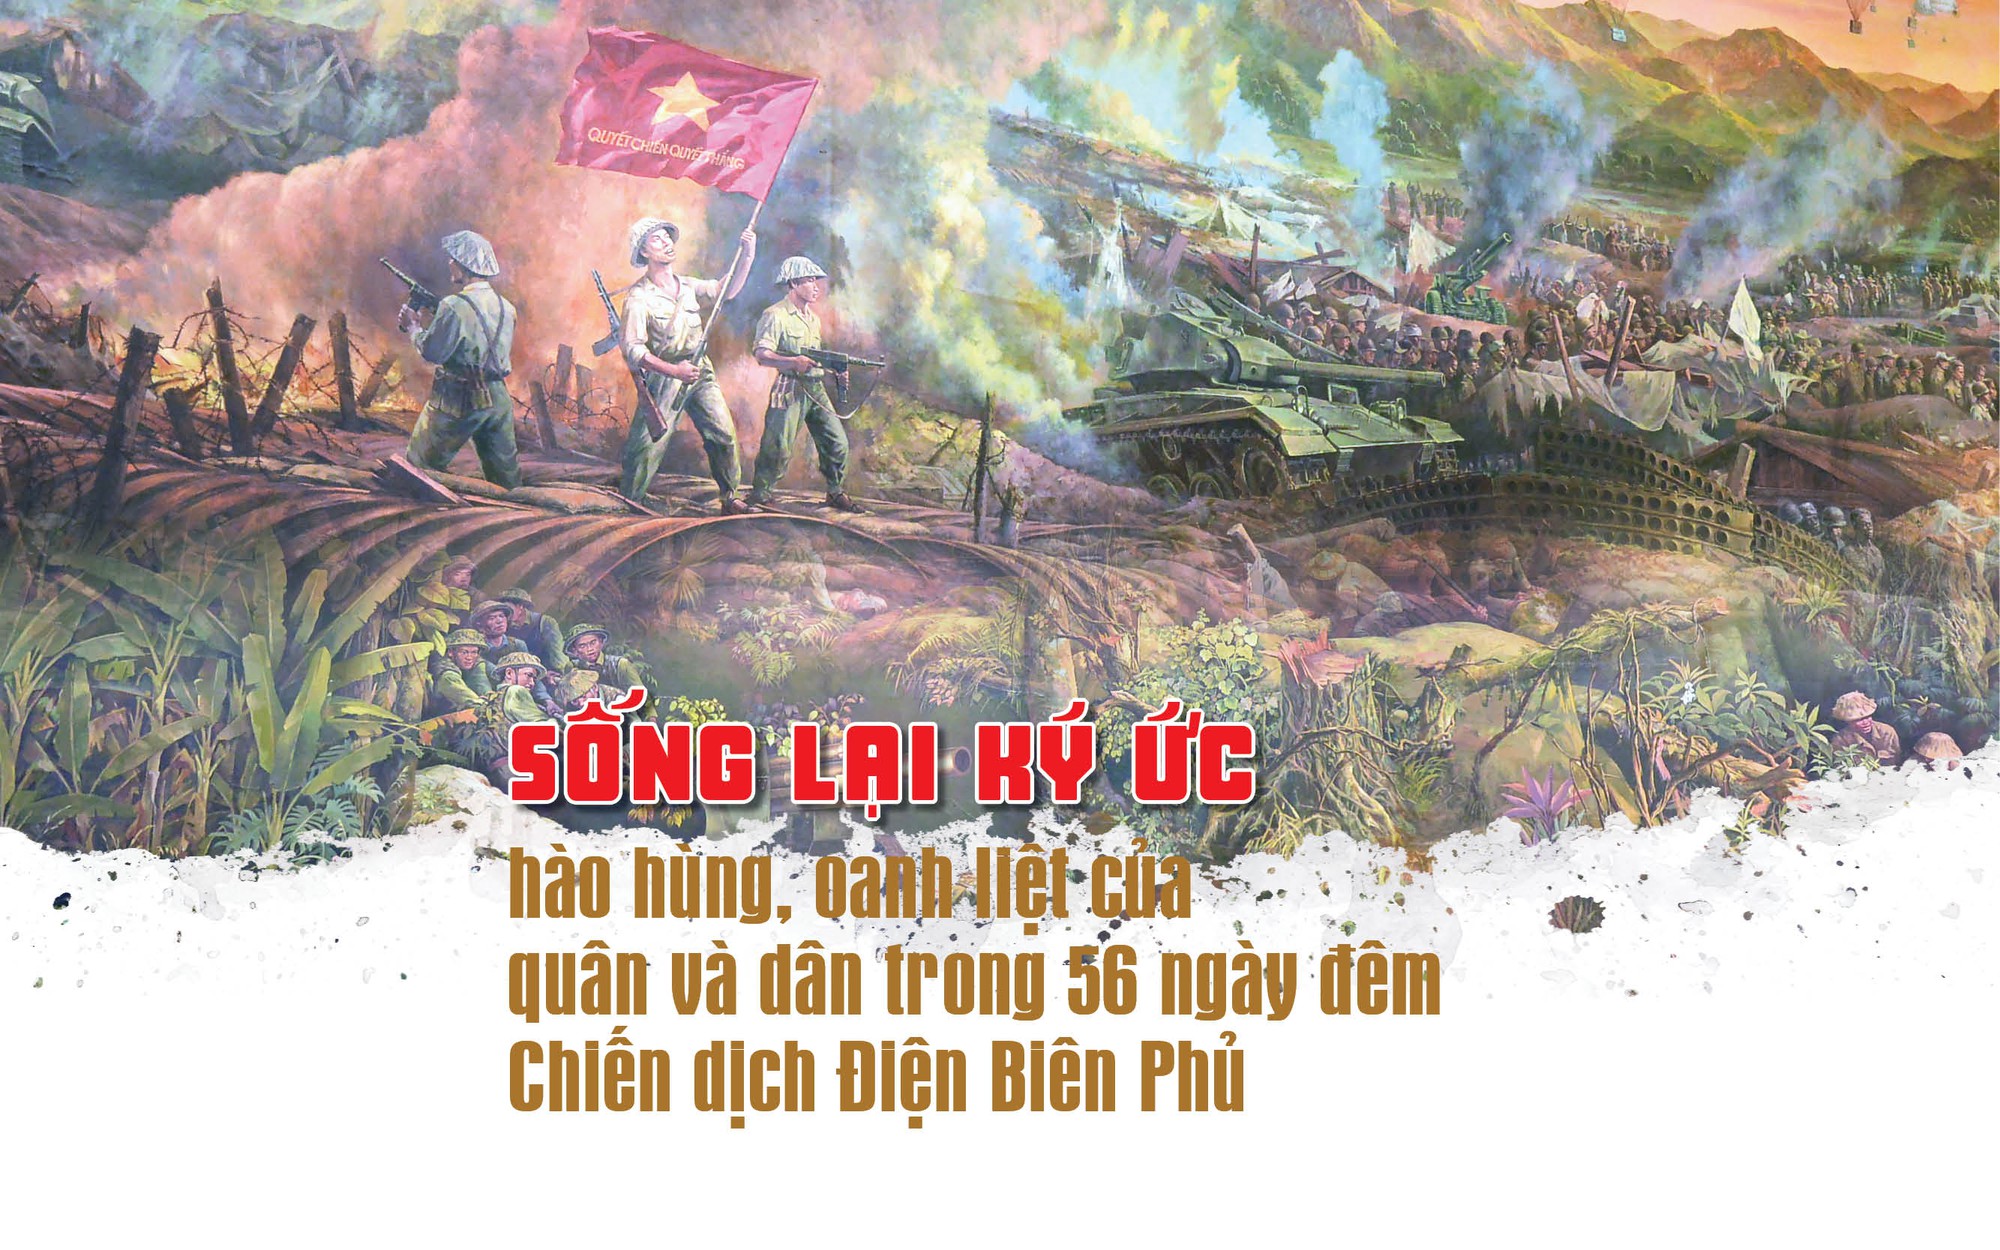 Sống lại ký ức hào hùng, oanh liệt của quân và dân ta trong 56 ngày đêm Chiến dịch Điện Biên Phủ